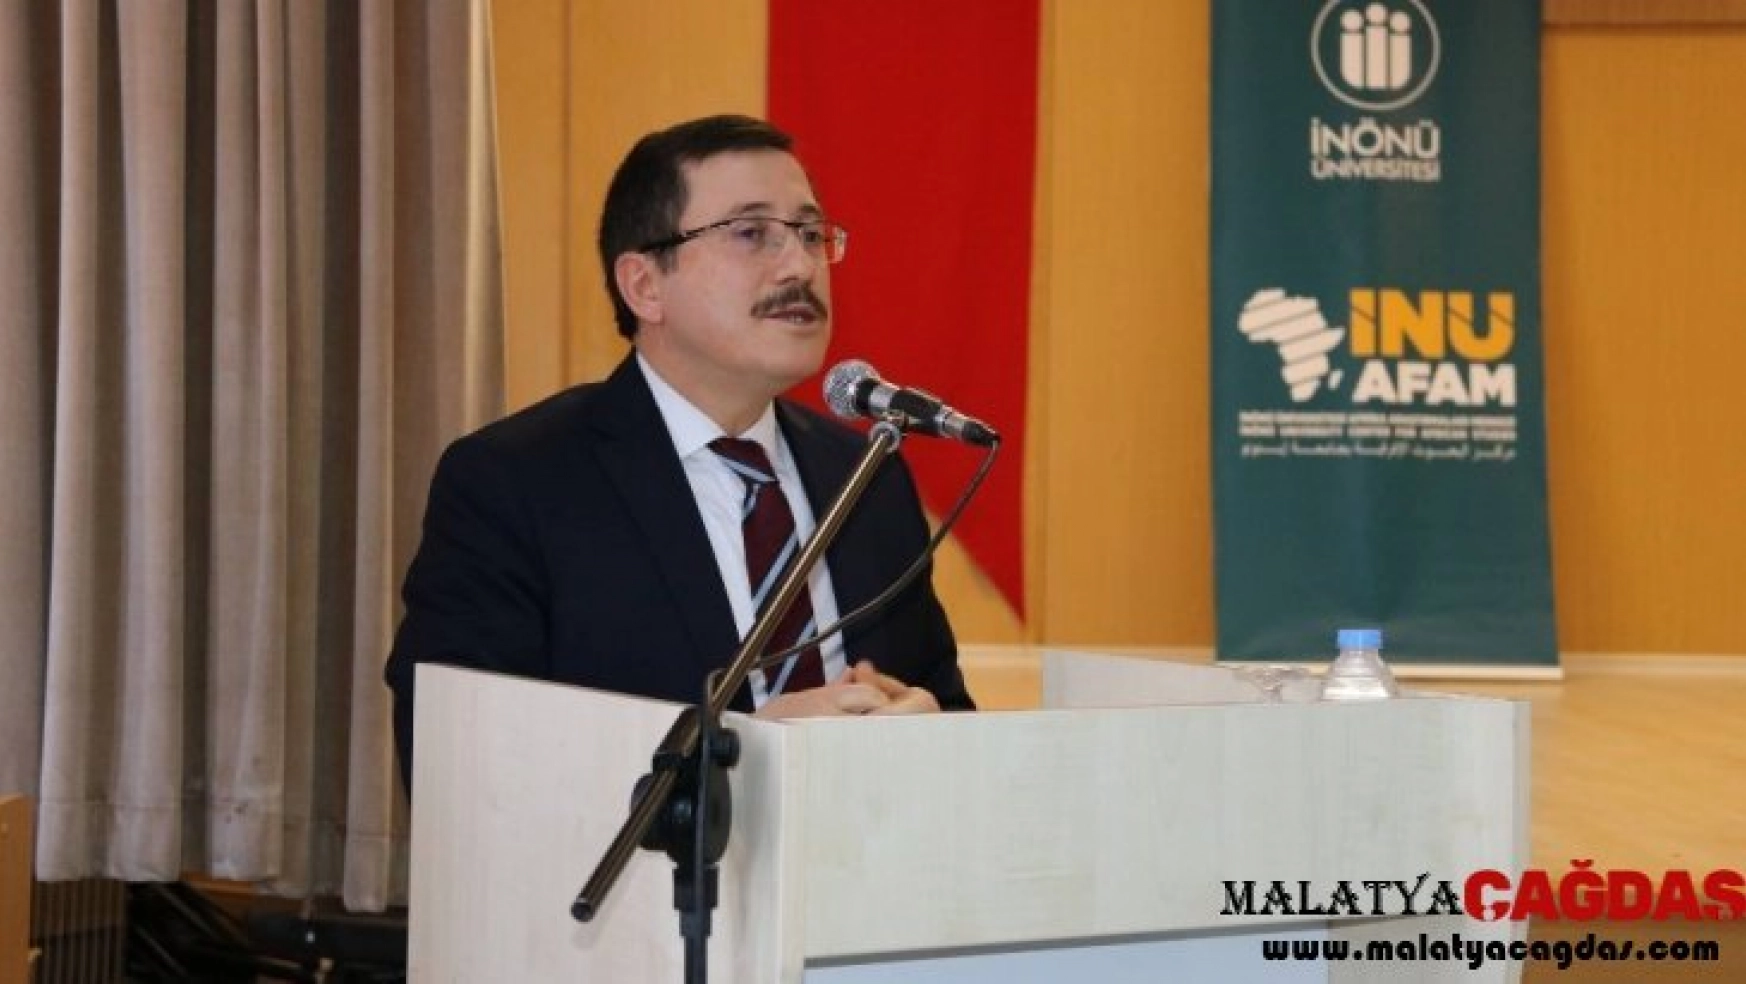 Malatya'da Türkiye Afrika ilişkileri masaya yatırıldı